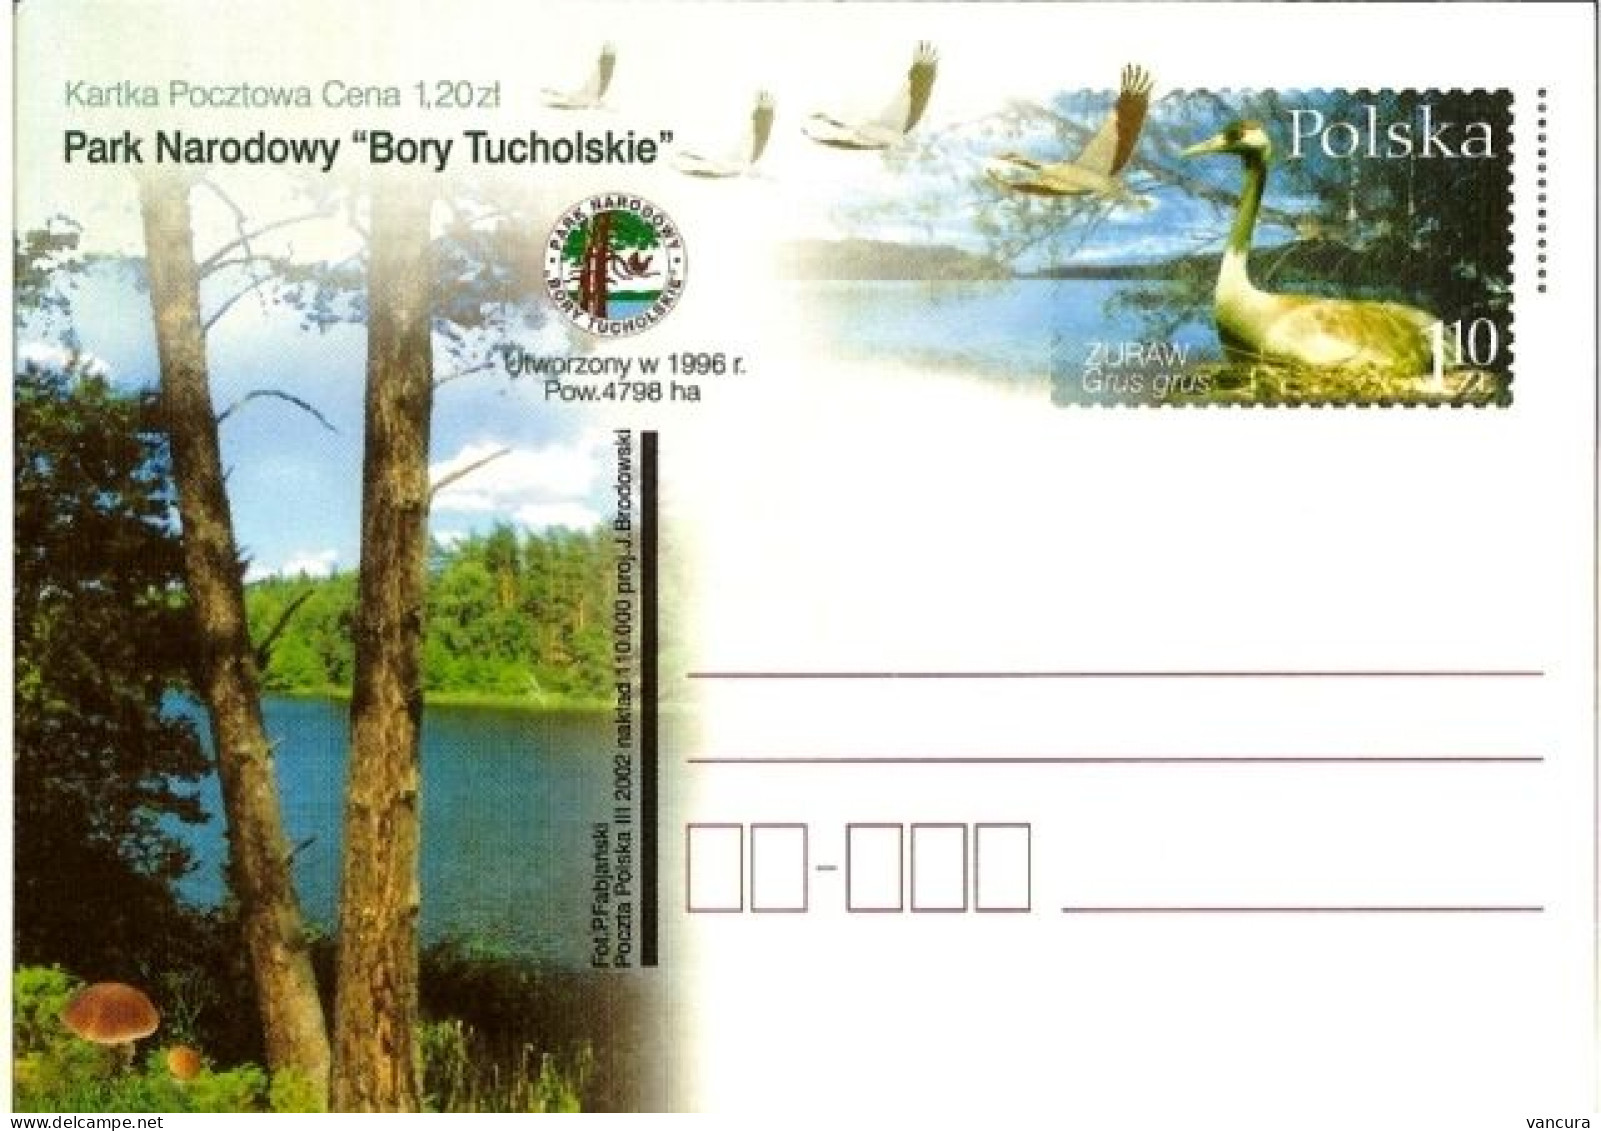 Cp 1275 Poland Park Narodowy Bory Tucholskie Grus Grus 2002 - Kraanvogels En Kraanvogelachtigen